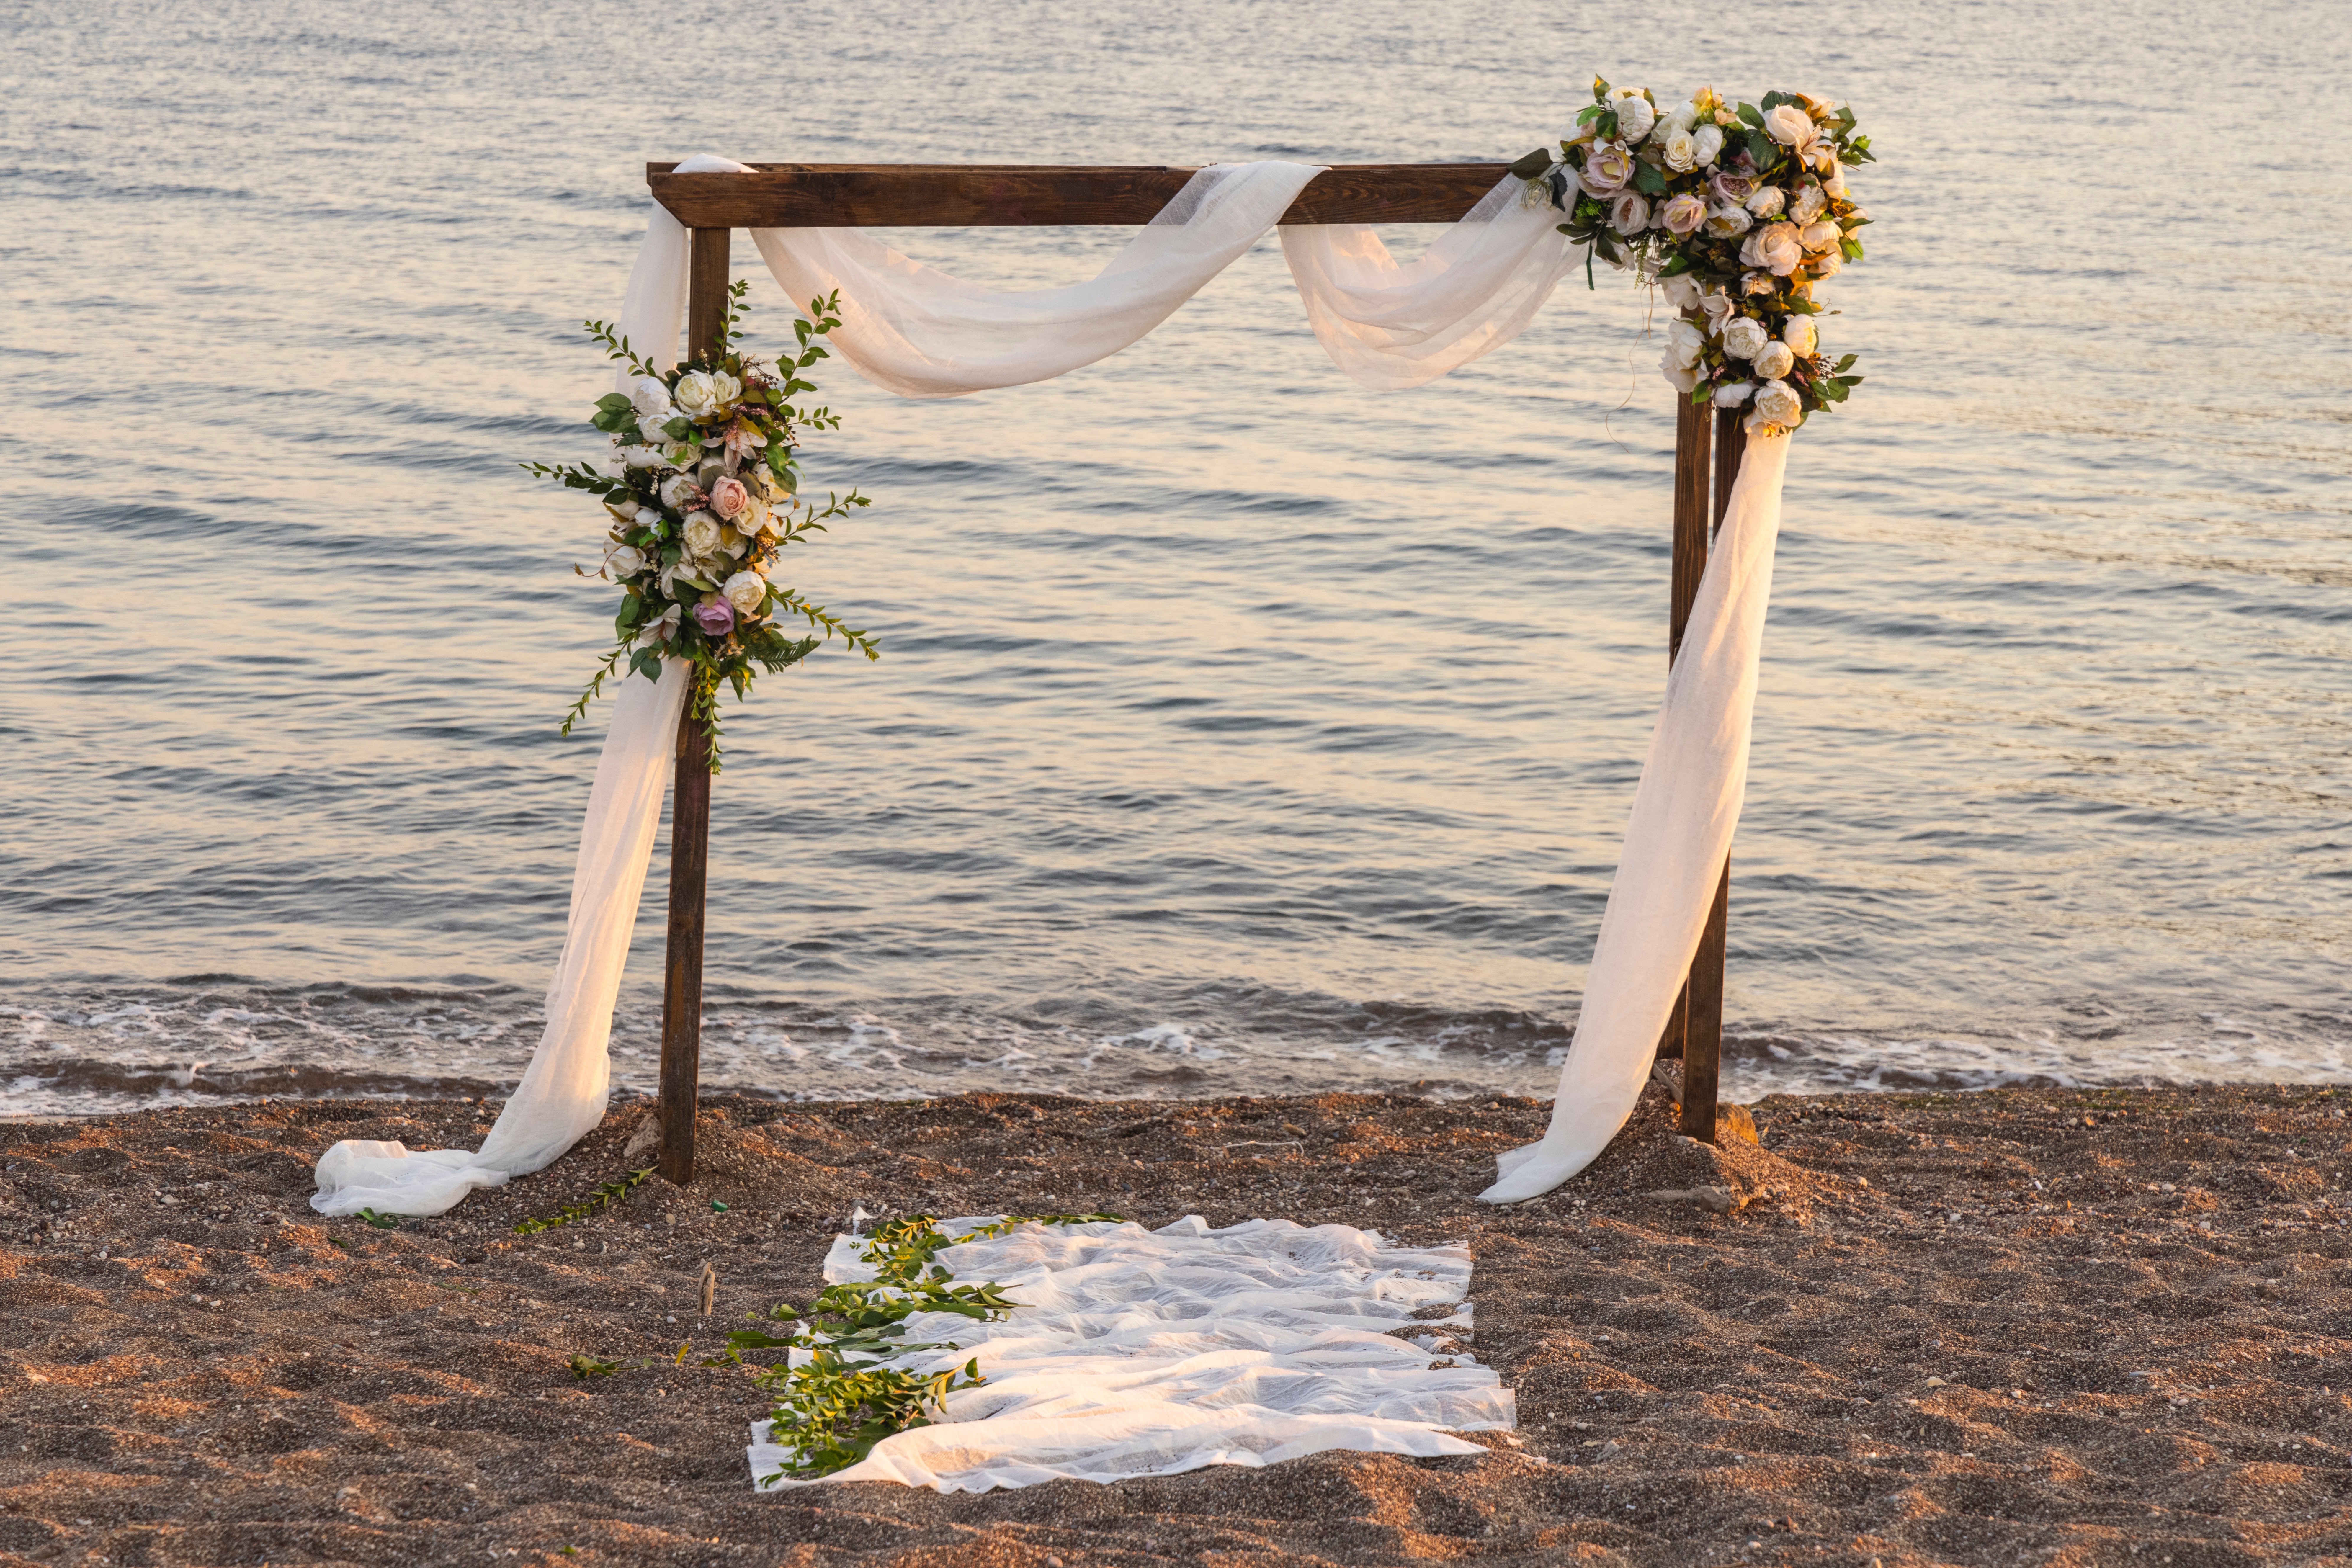 BEACH WEDDING ARCH